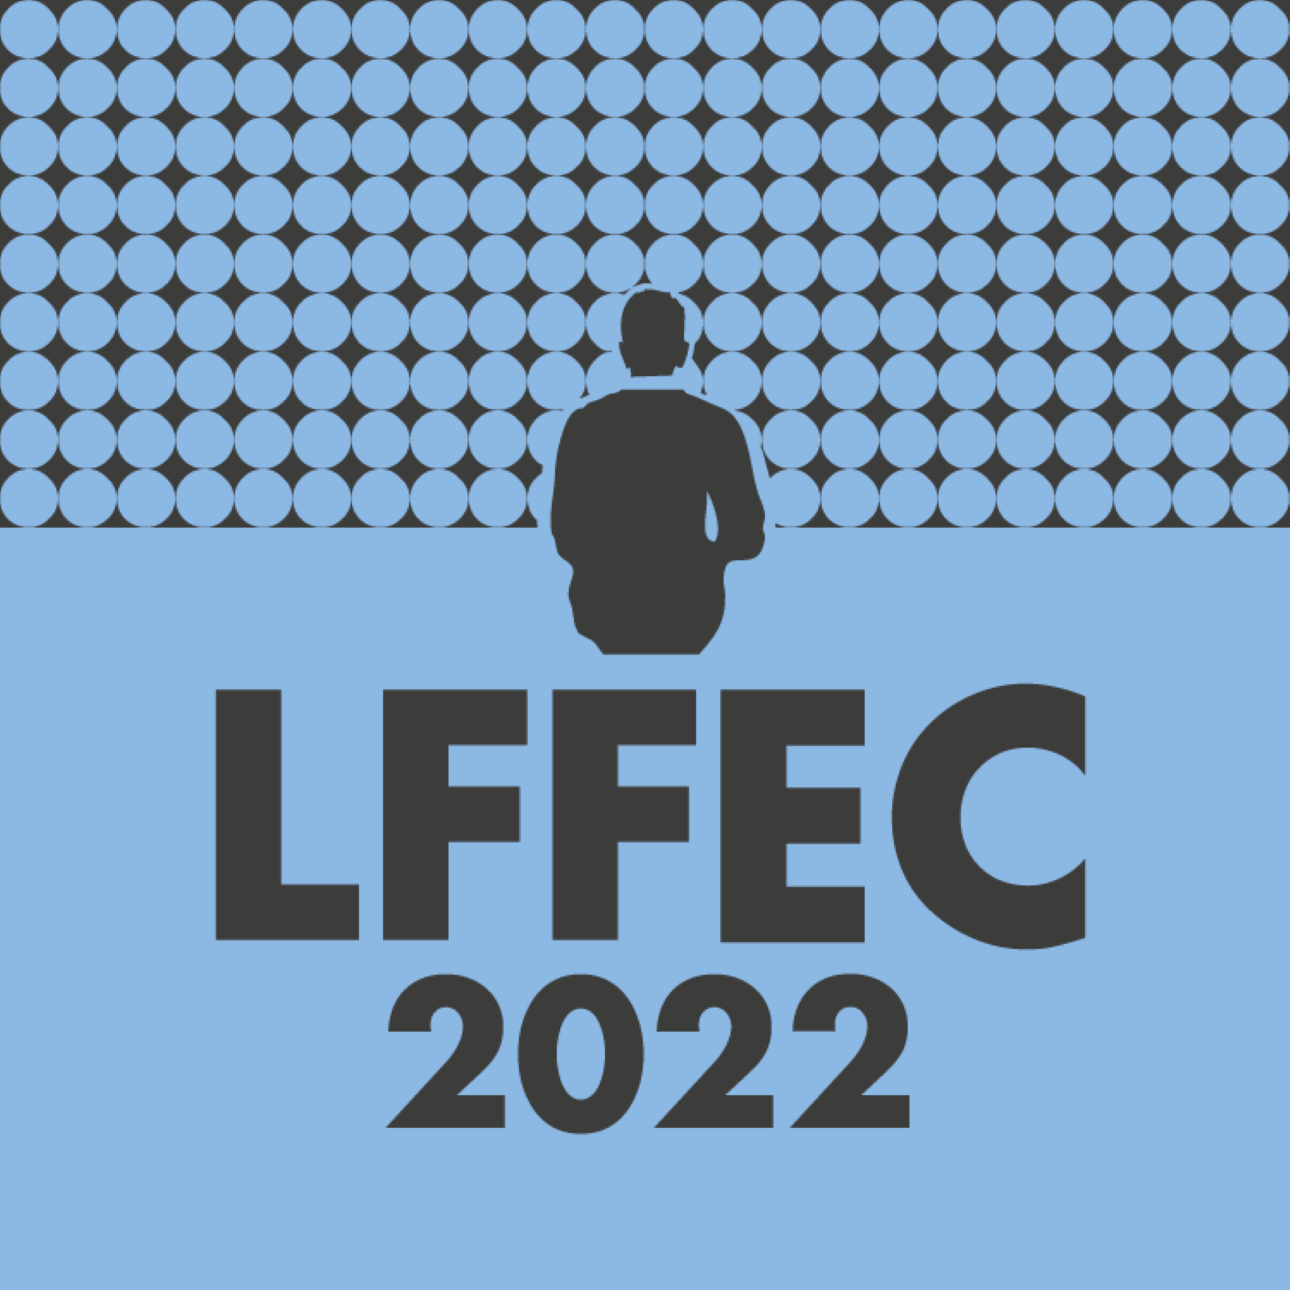 LFFEC2022